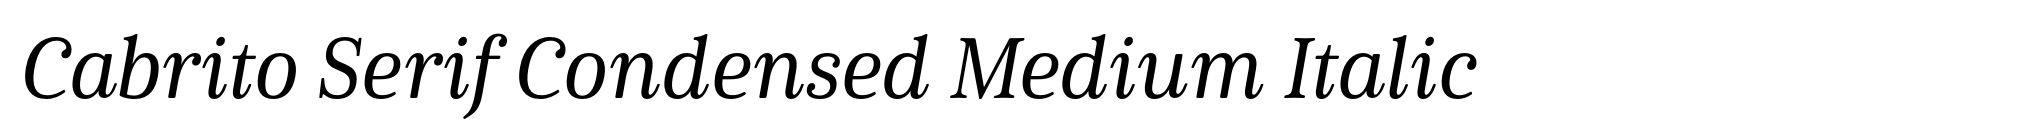 Cabrito Serif Condensed Medium Italic image